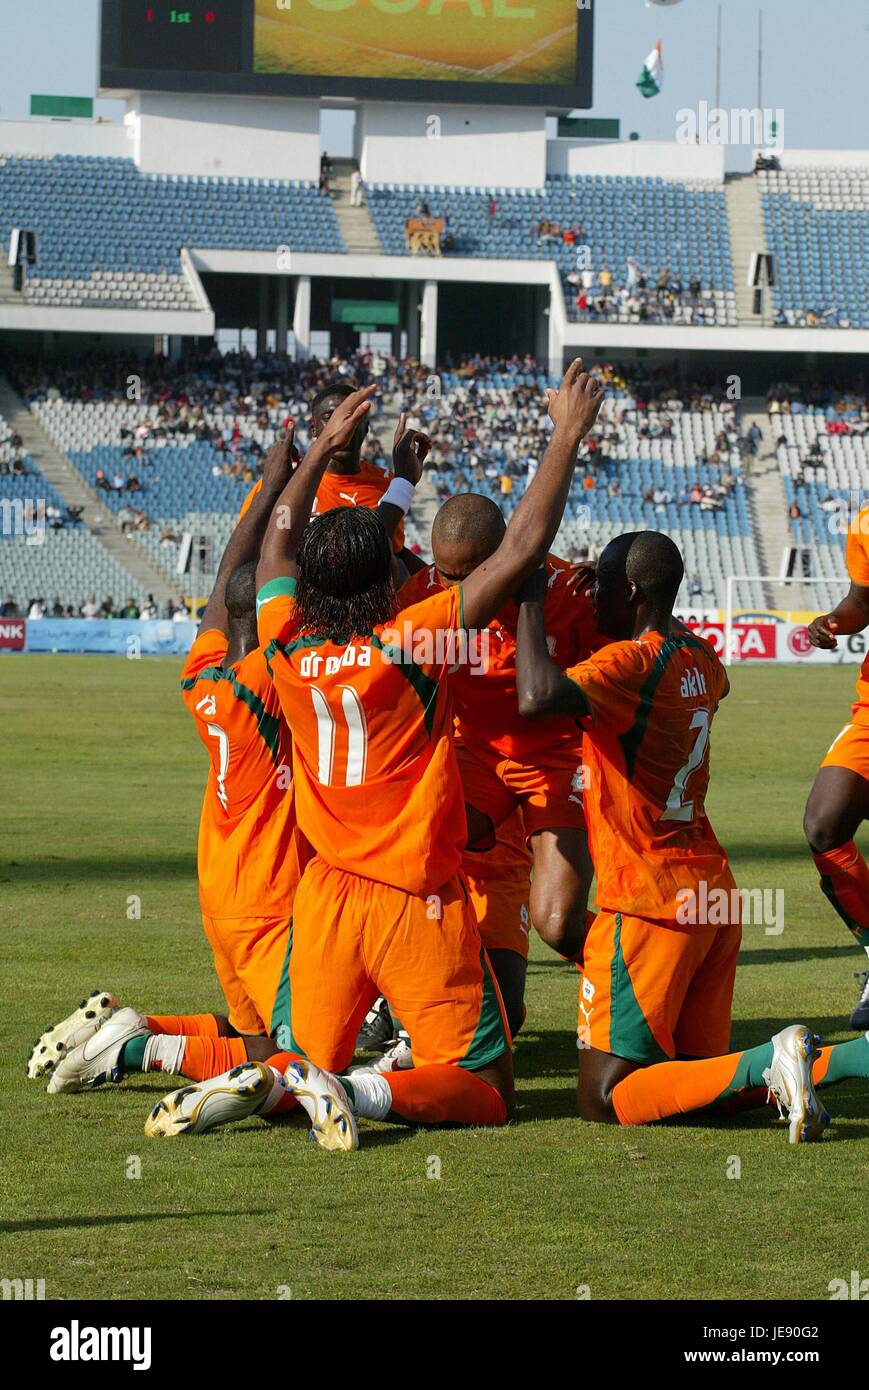 Ivory Coast's soccer stars' jerseys